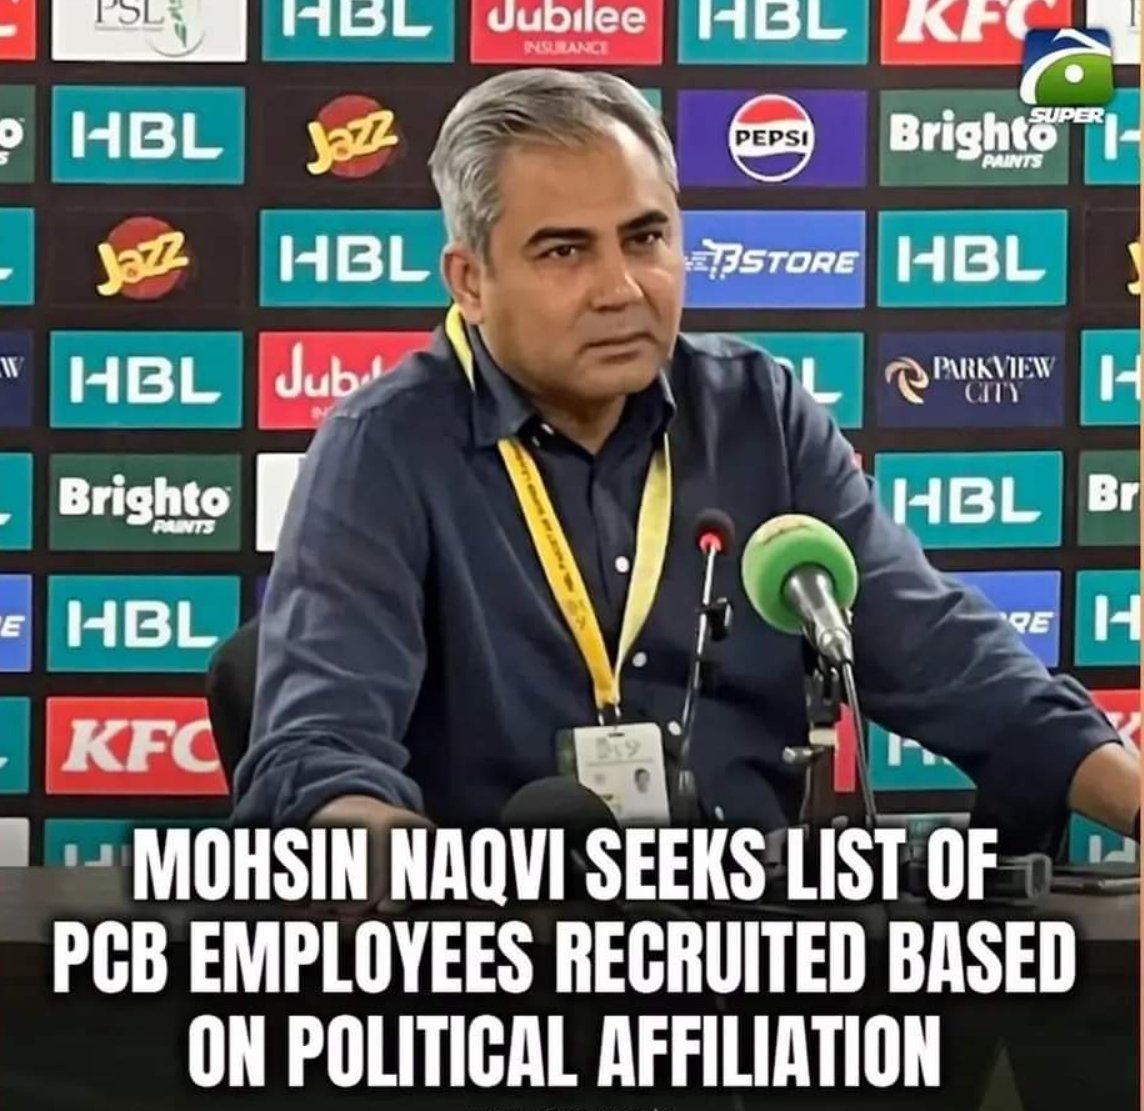 Mohsin Naqvi will fire Mohsin Naqvi.